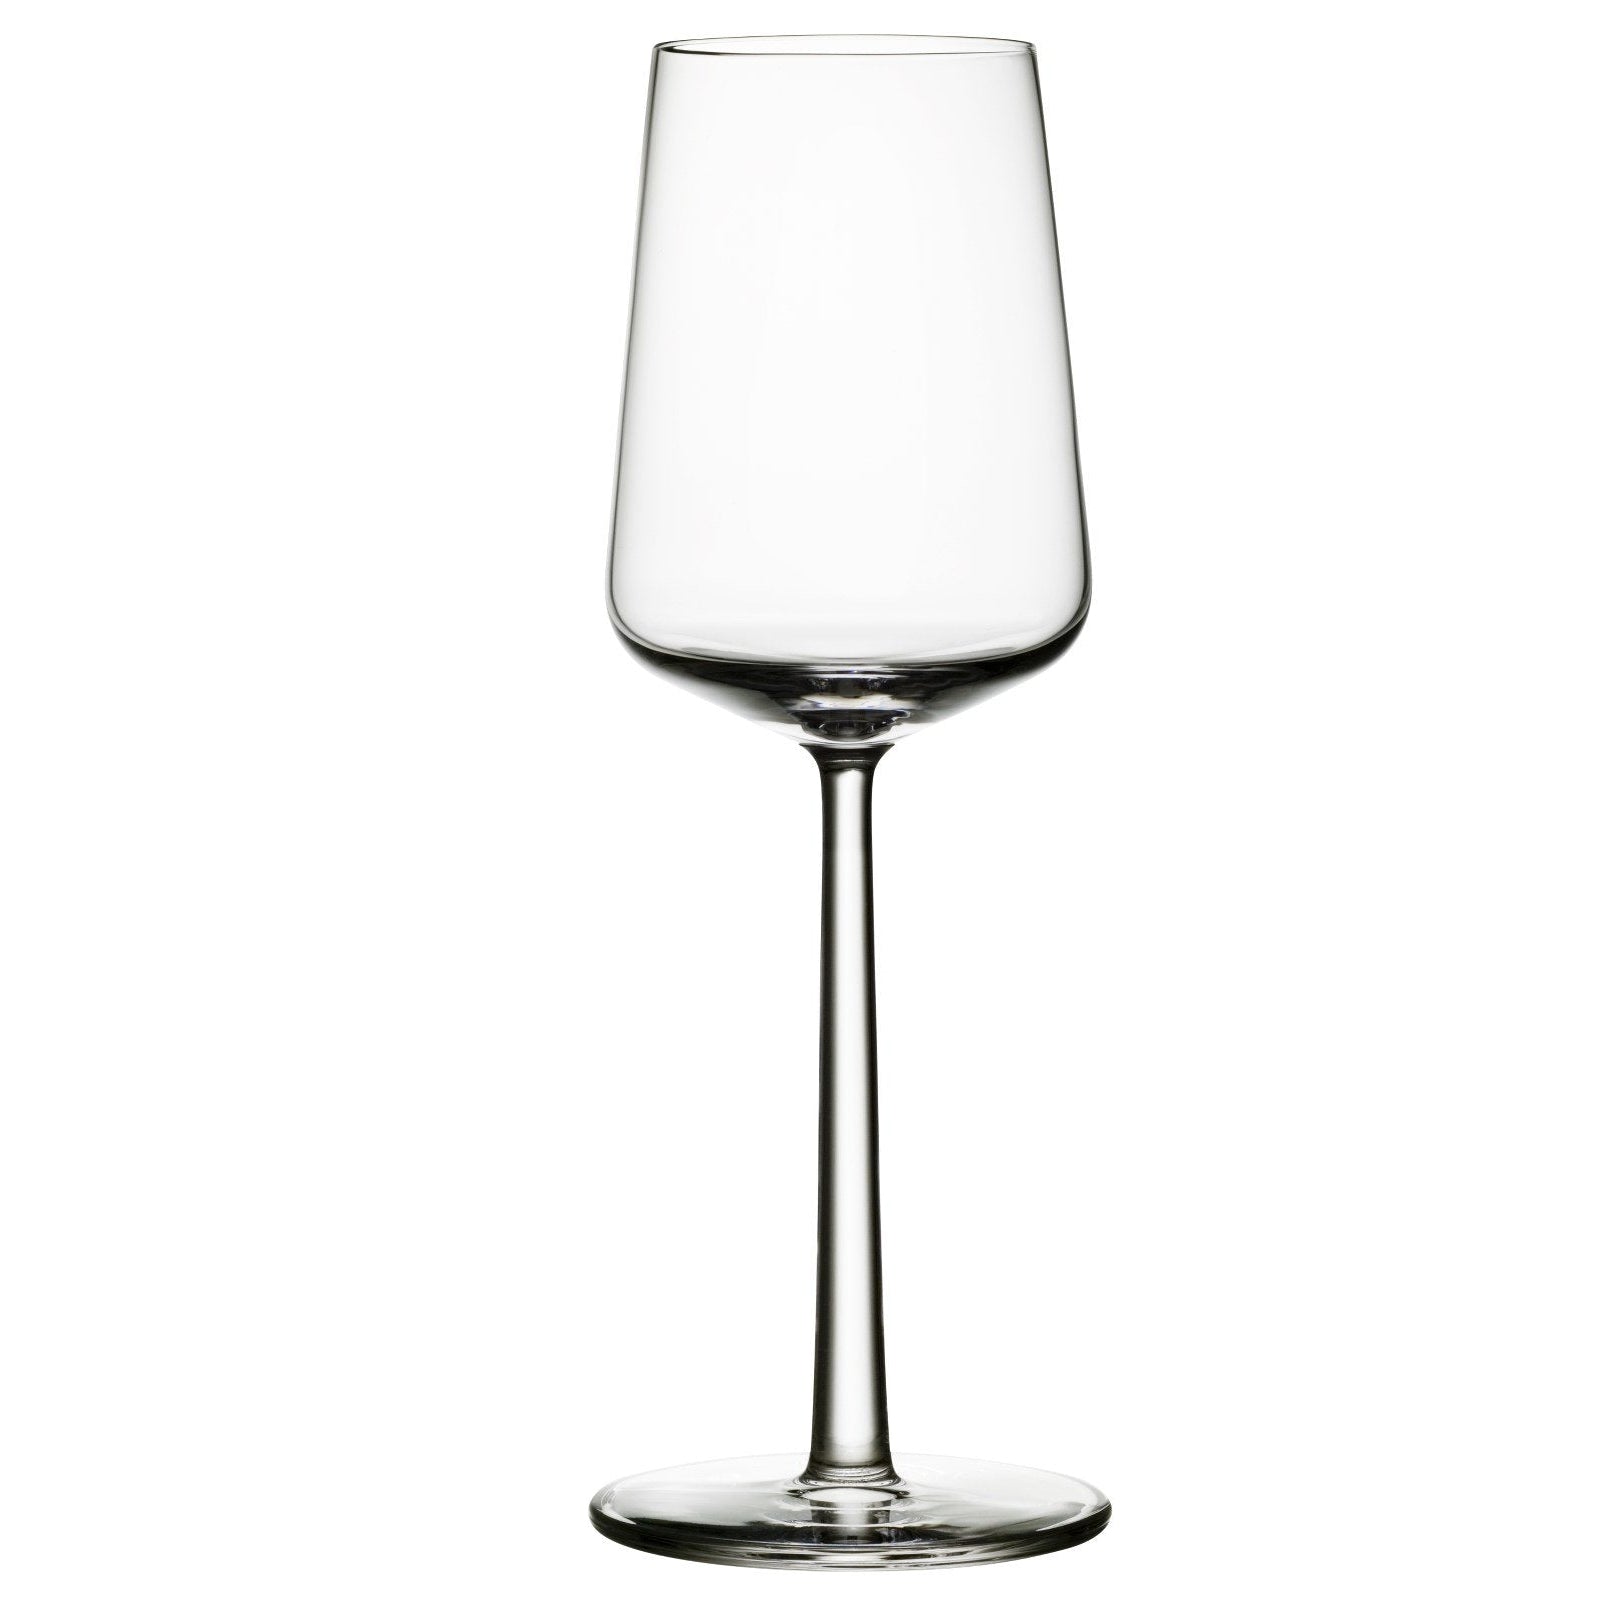 Iittala Essence Weißweinglas 2 Stück, 33cl